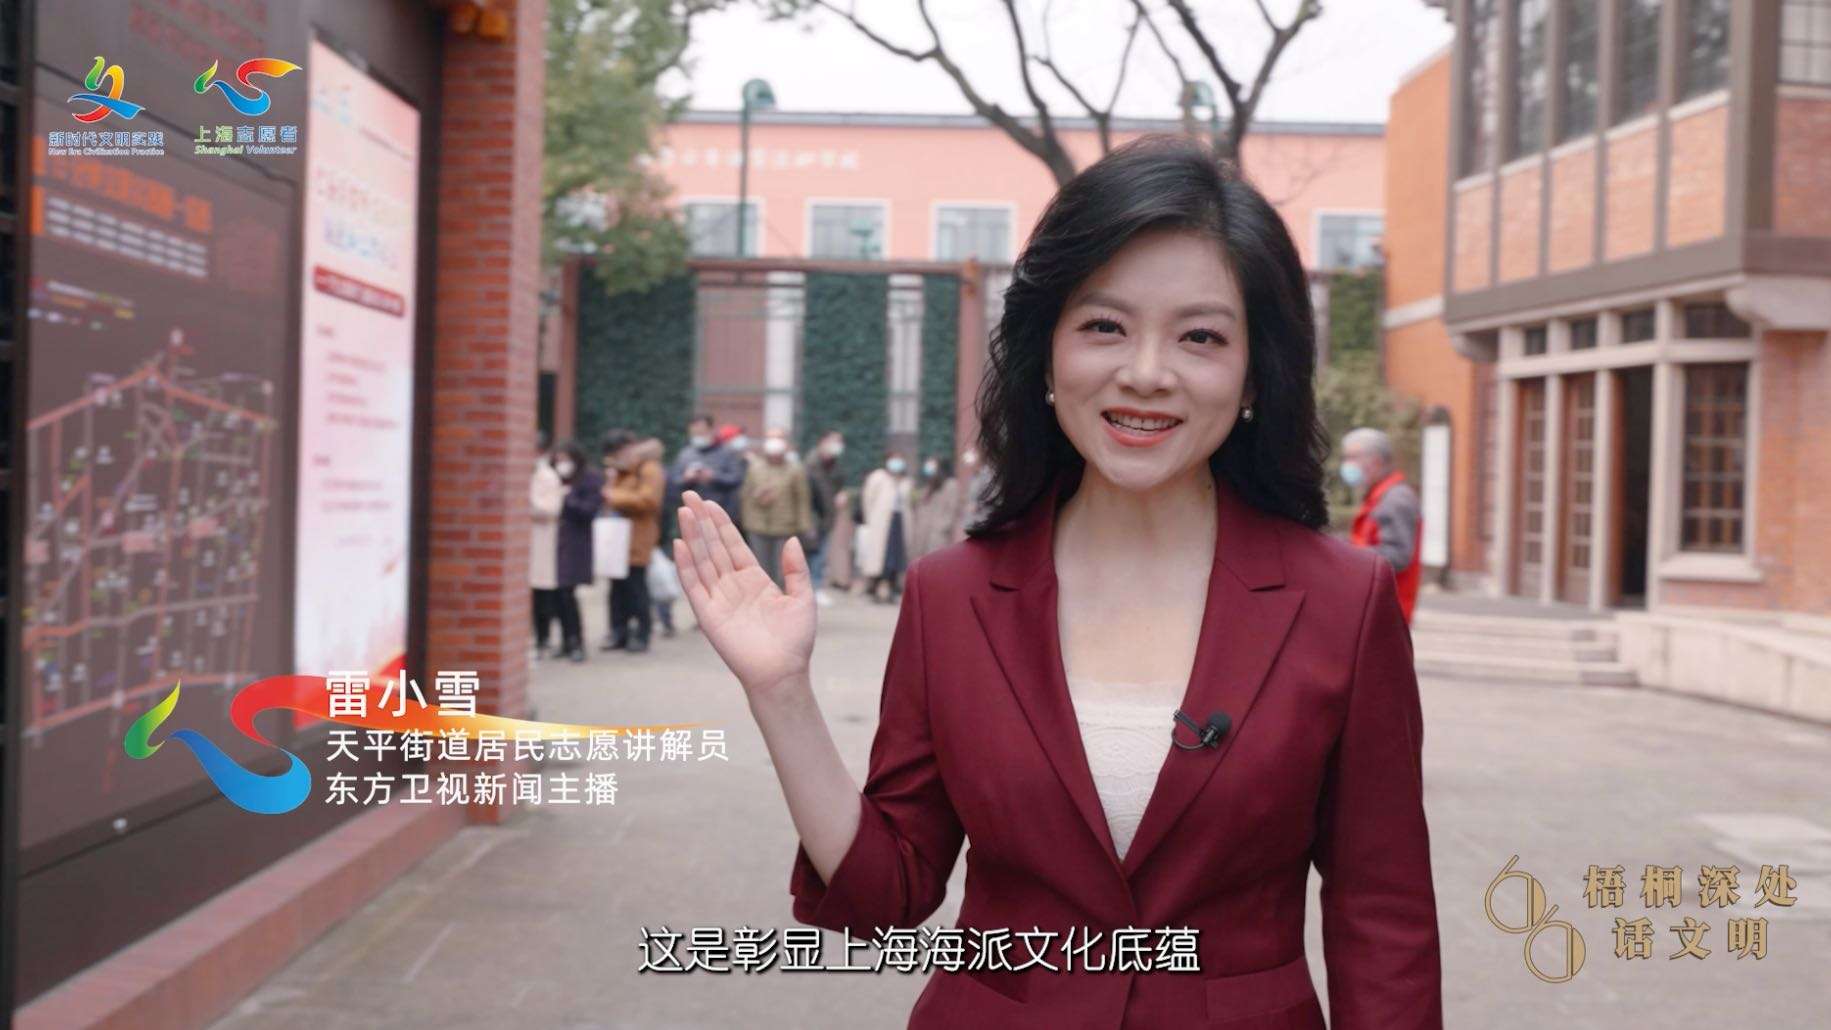 上海天平街道示范中心评选视频